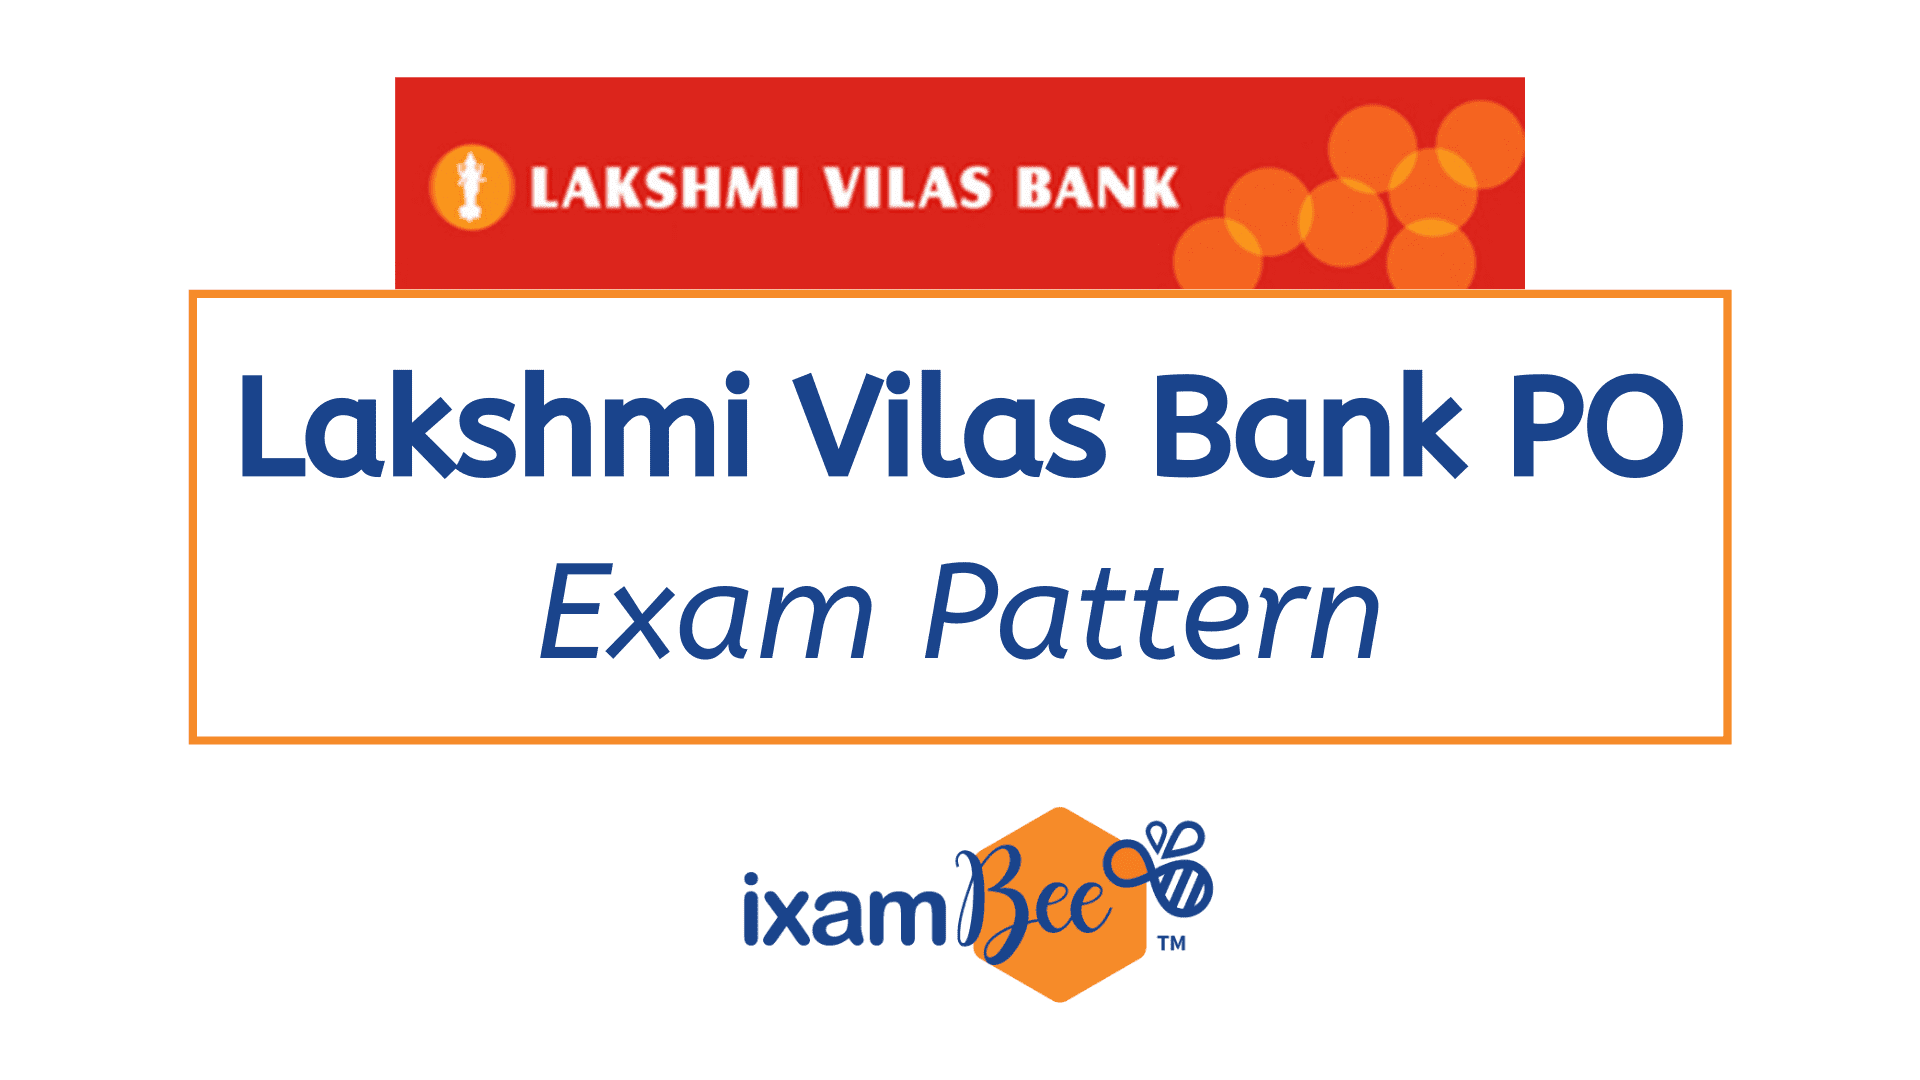 Lakshmi Vilas Bank PO Exam Pattern